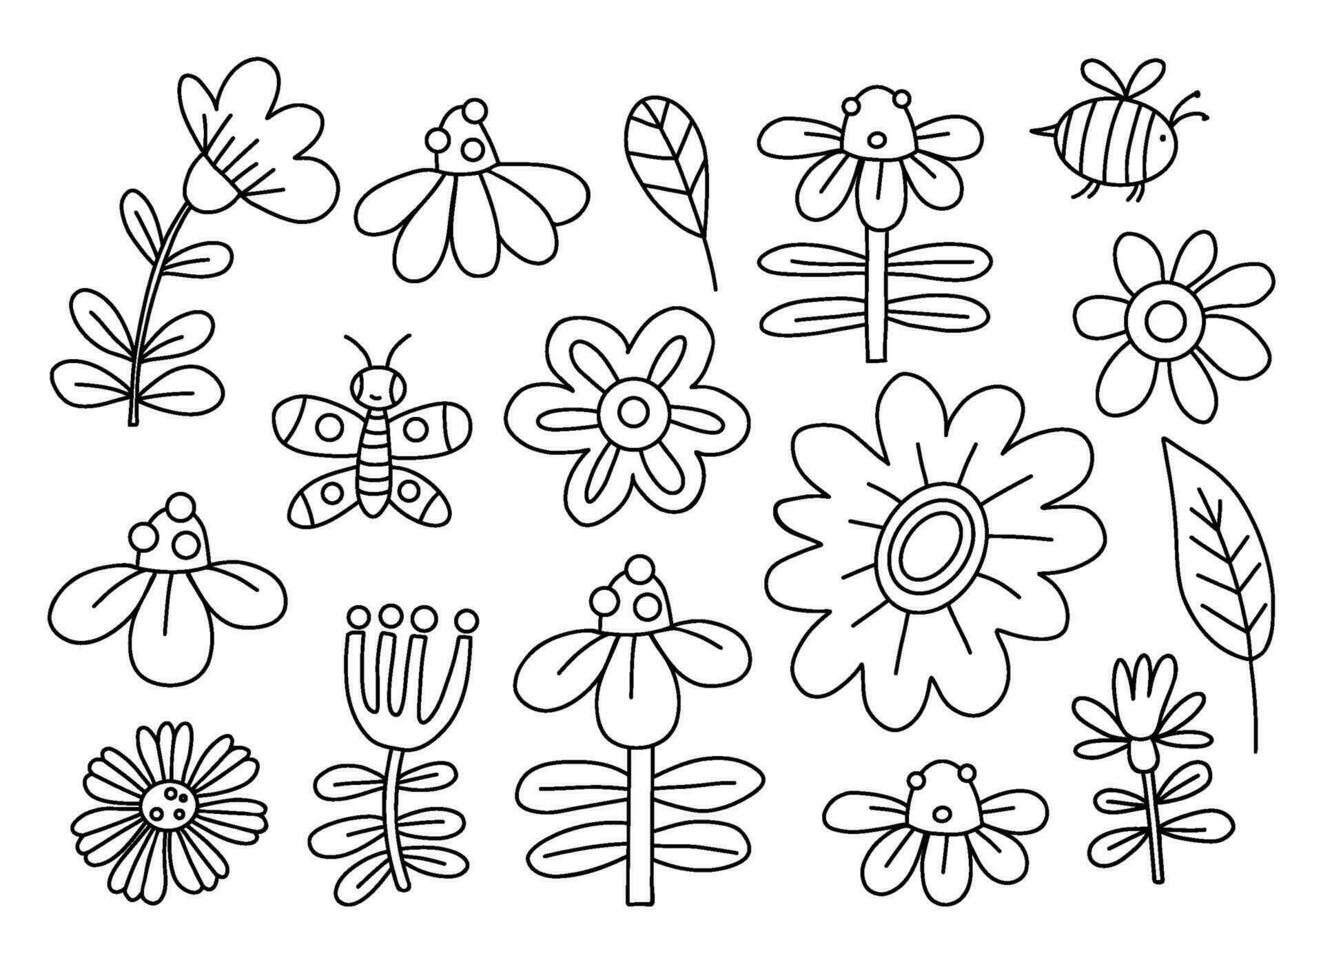 coleção esboço flores vetor isolado linear mão desenhado plantas e inseto.